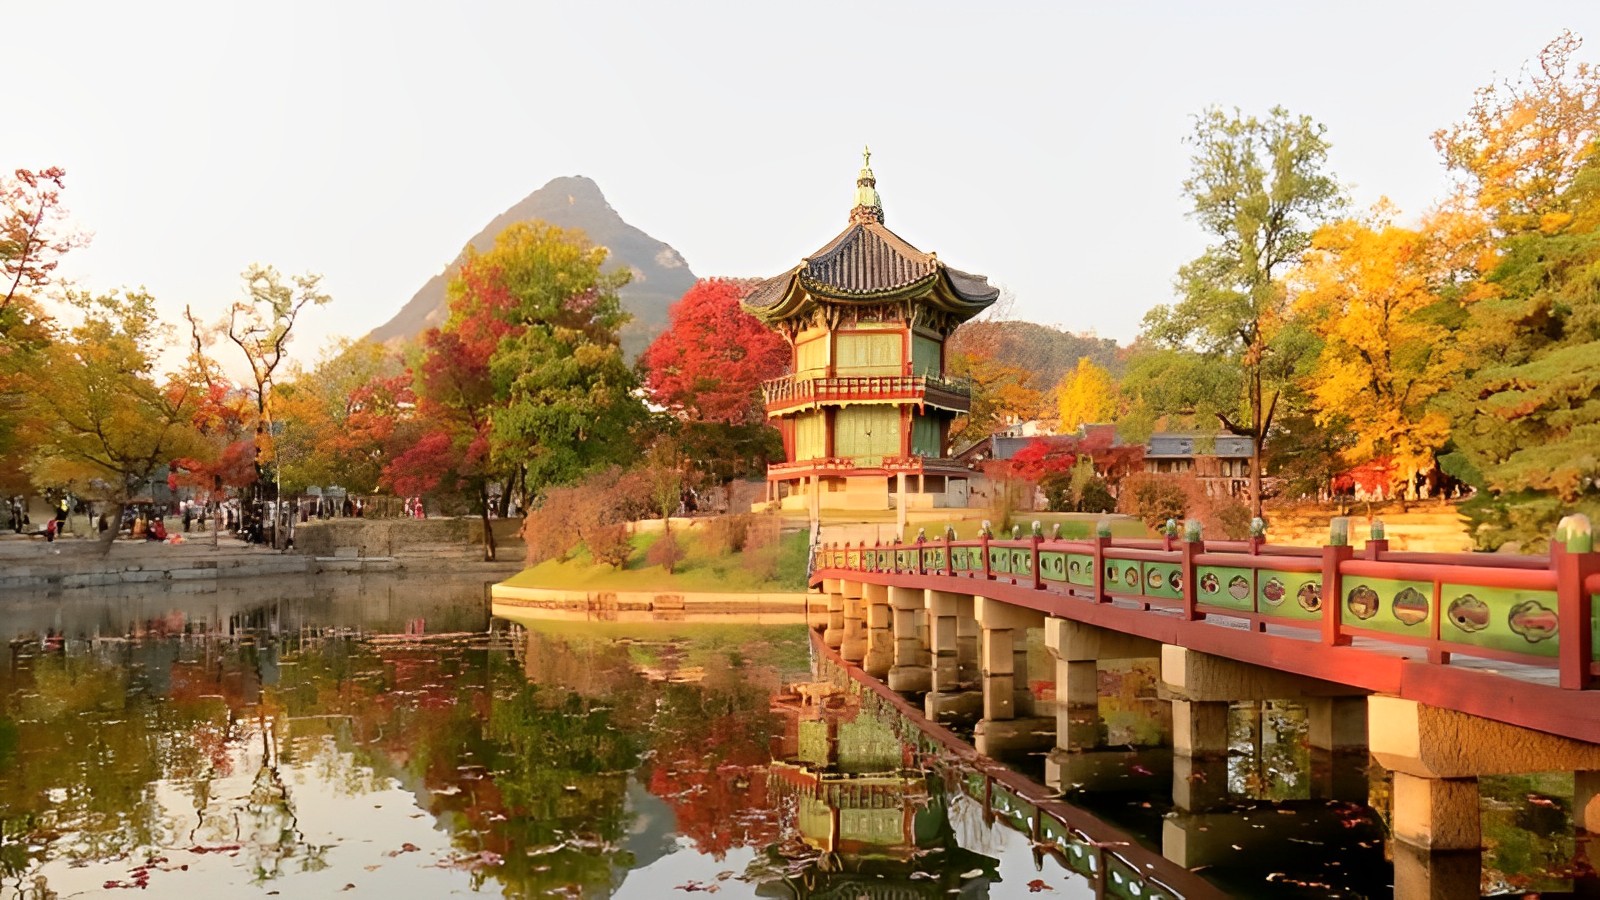 khung cảnh lãng mạn ở vườn ngự uyển gyeongbokgung